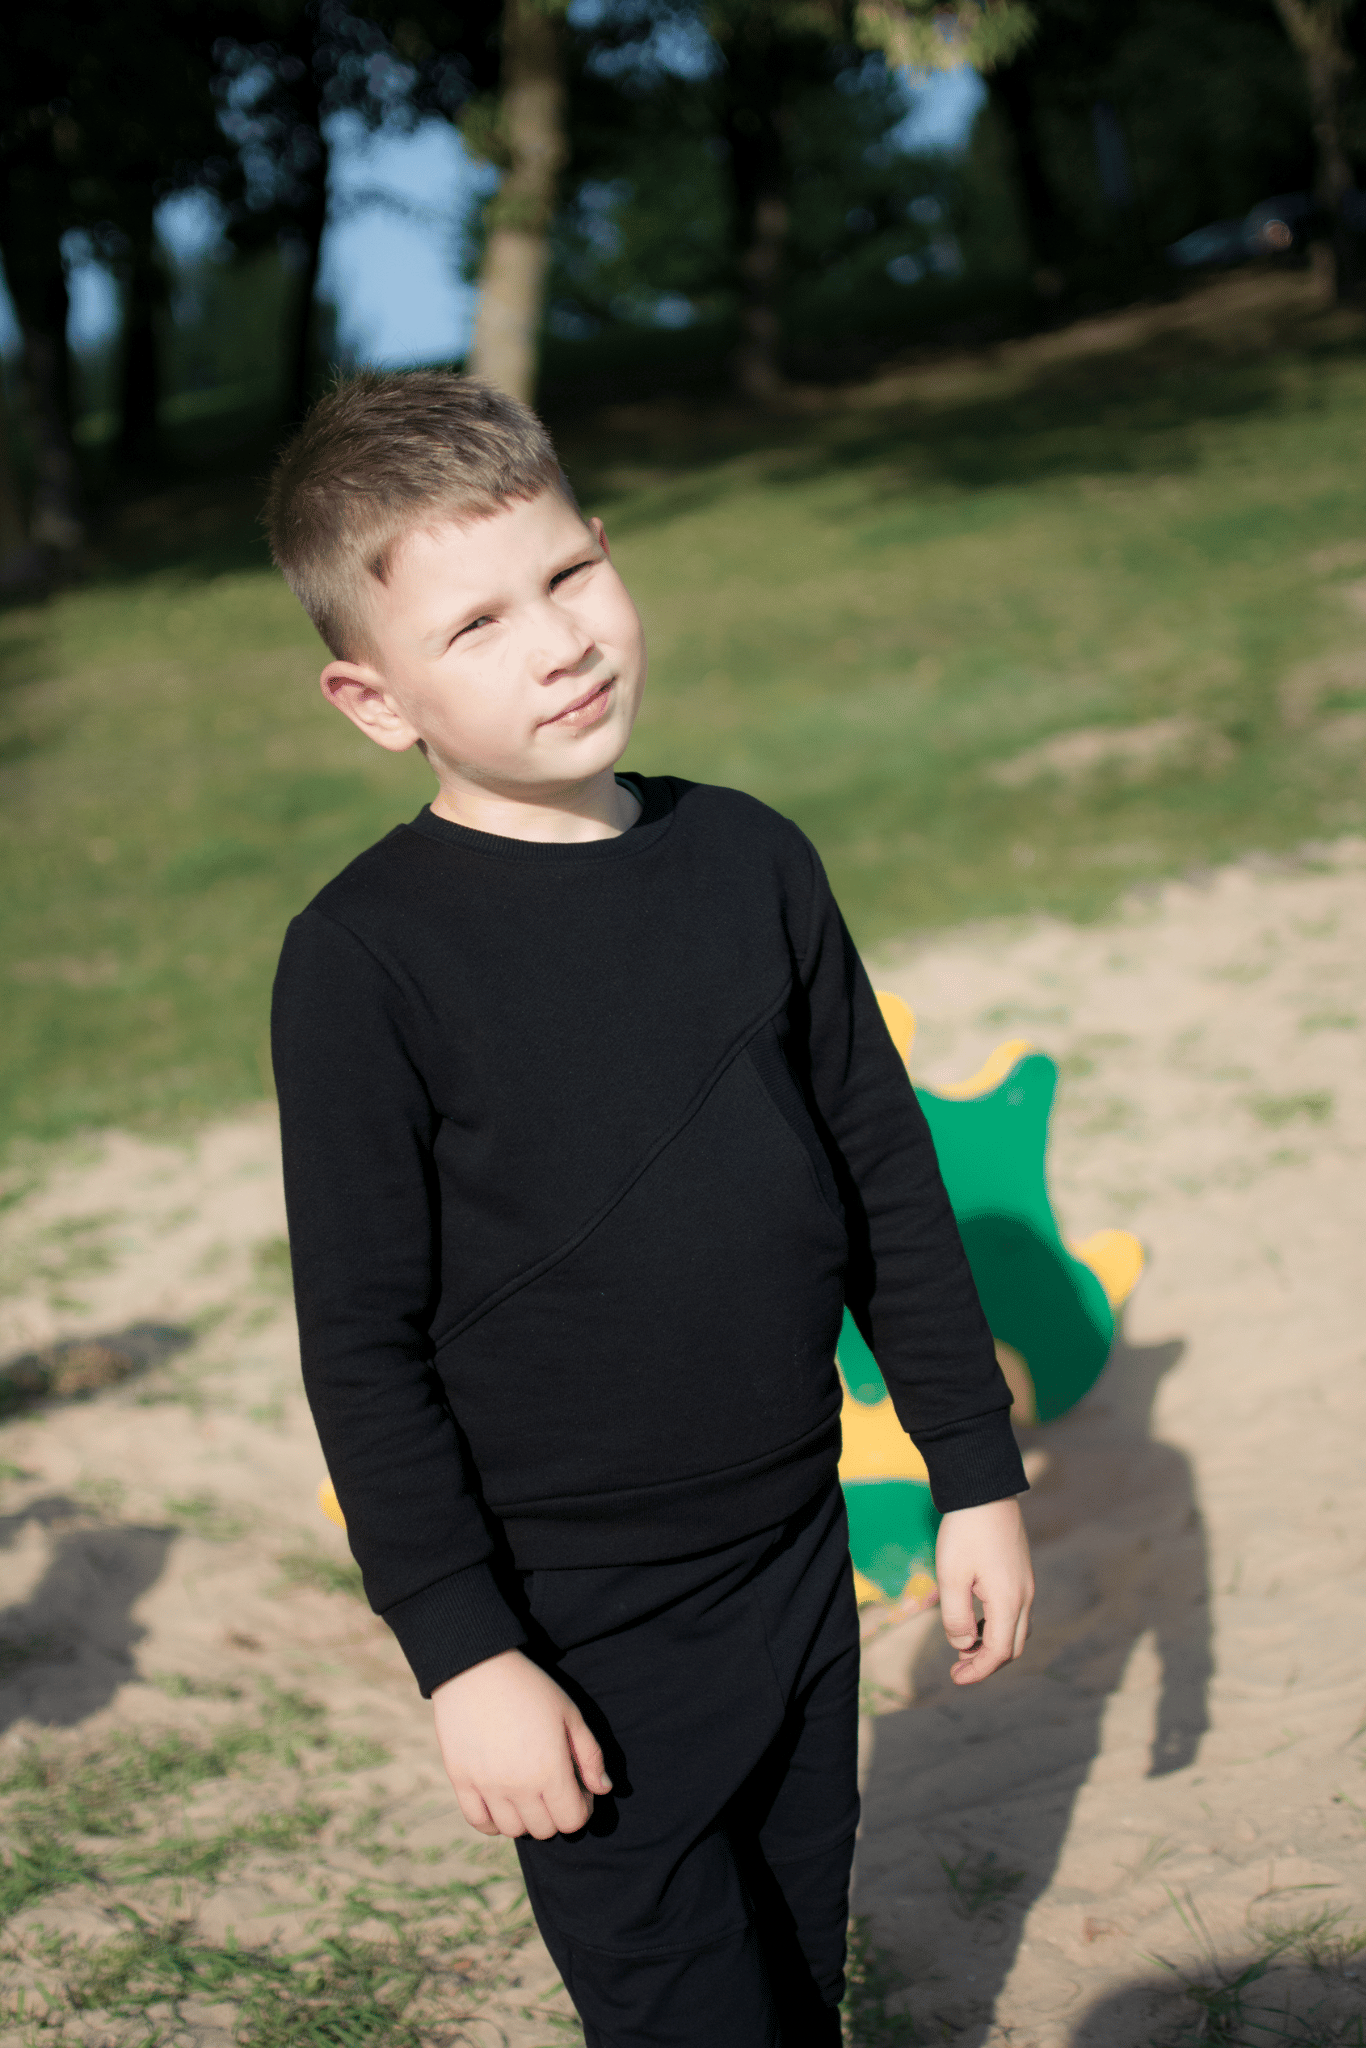 Juodos spalvos vaikiškas kostiumėlis “Vaikystė"